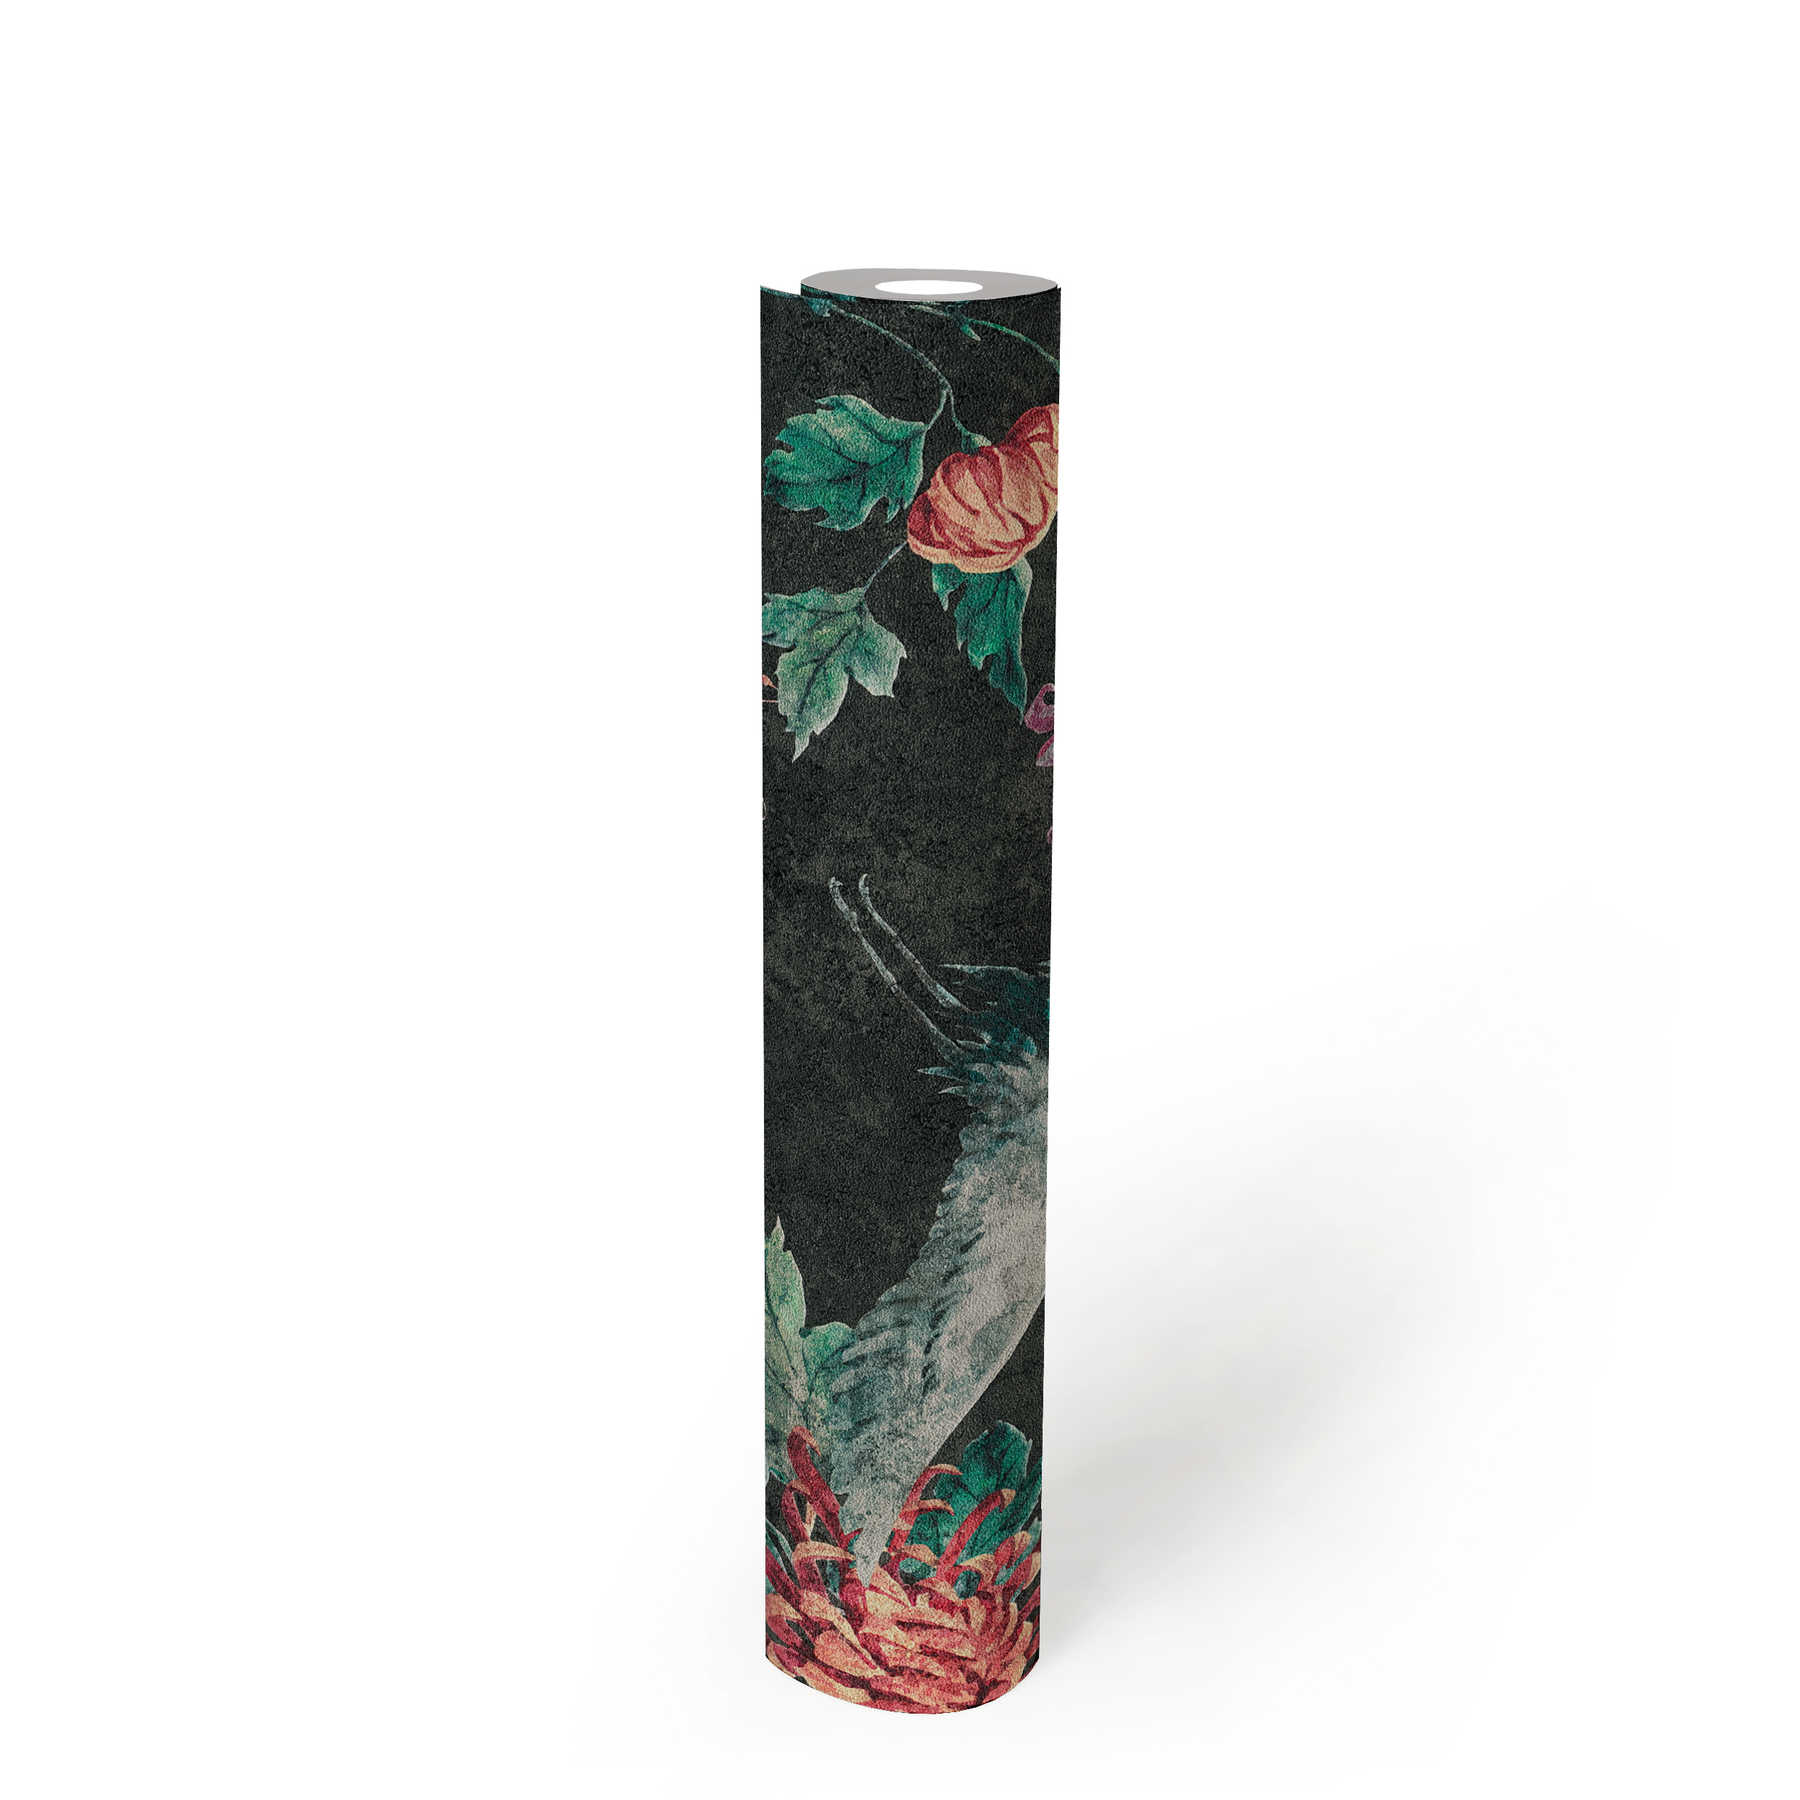             Papier peint à motifs avec grues et fleurs asiatiques - noir, rouge, vert
        